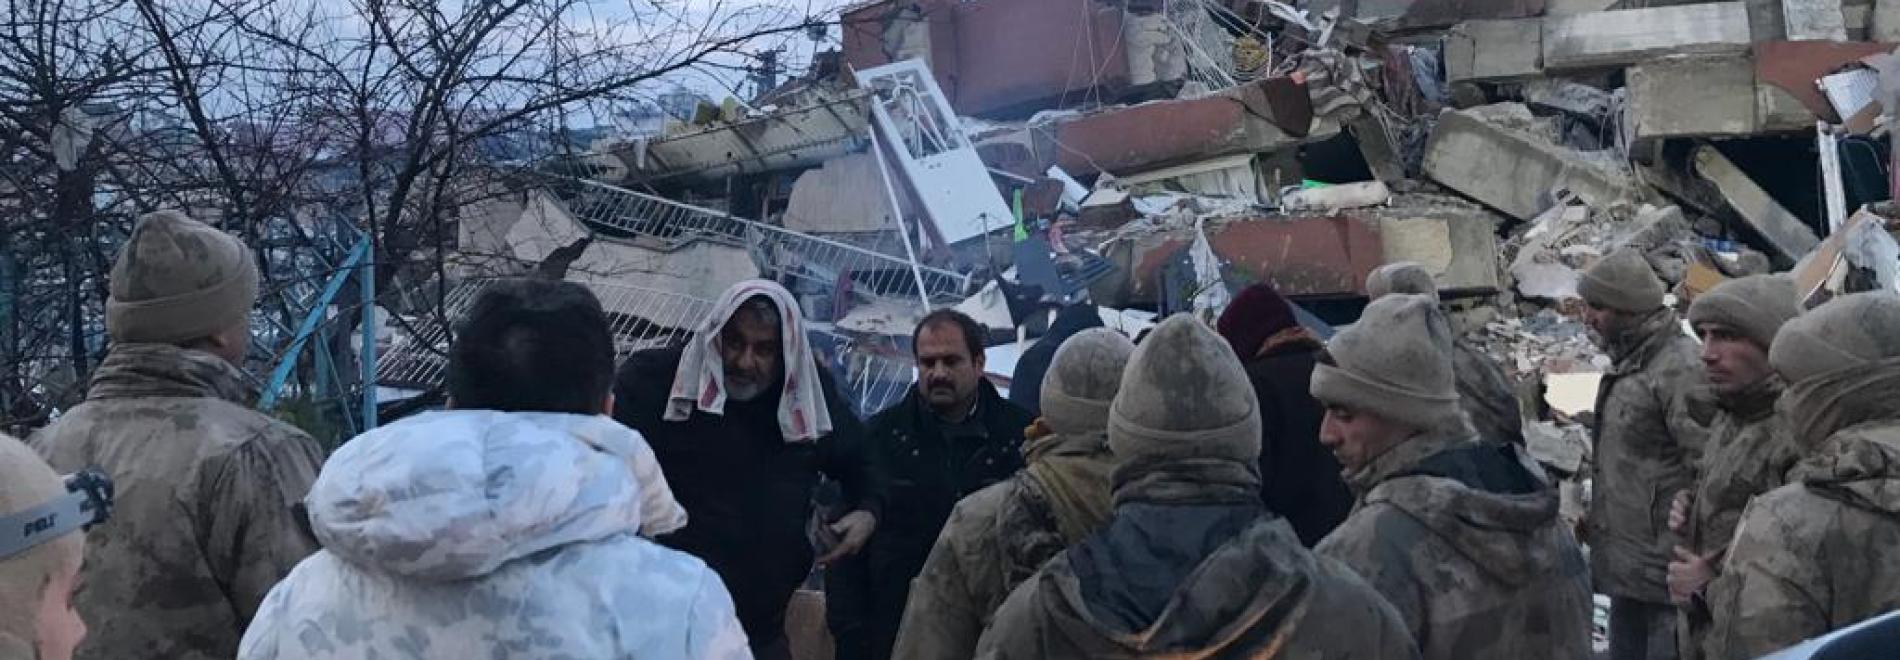 Vom Erdbeben zerstörte Gebäude im türkischen Hatay.